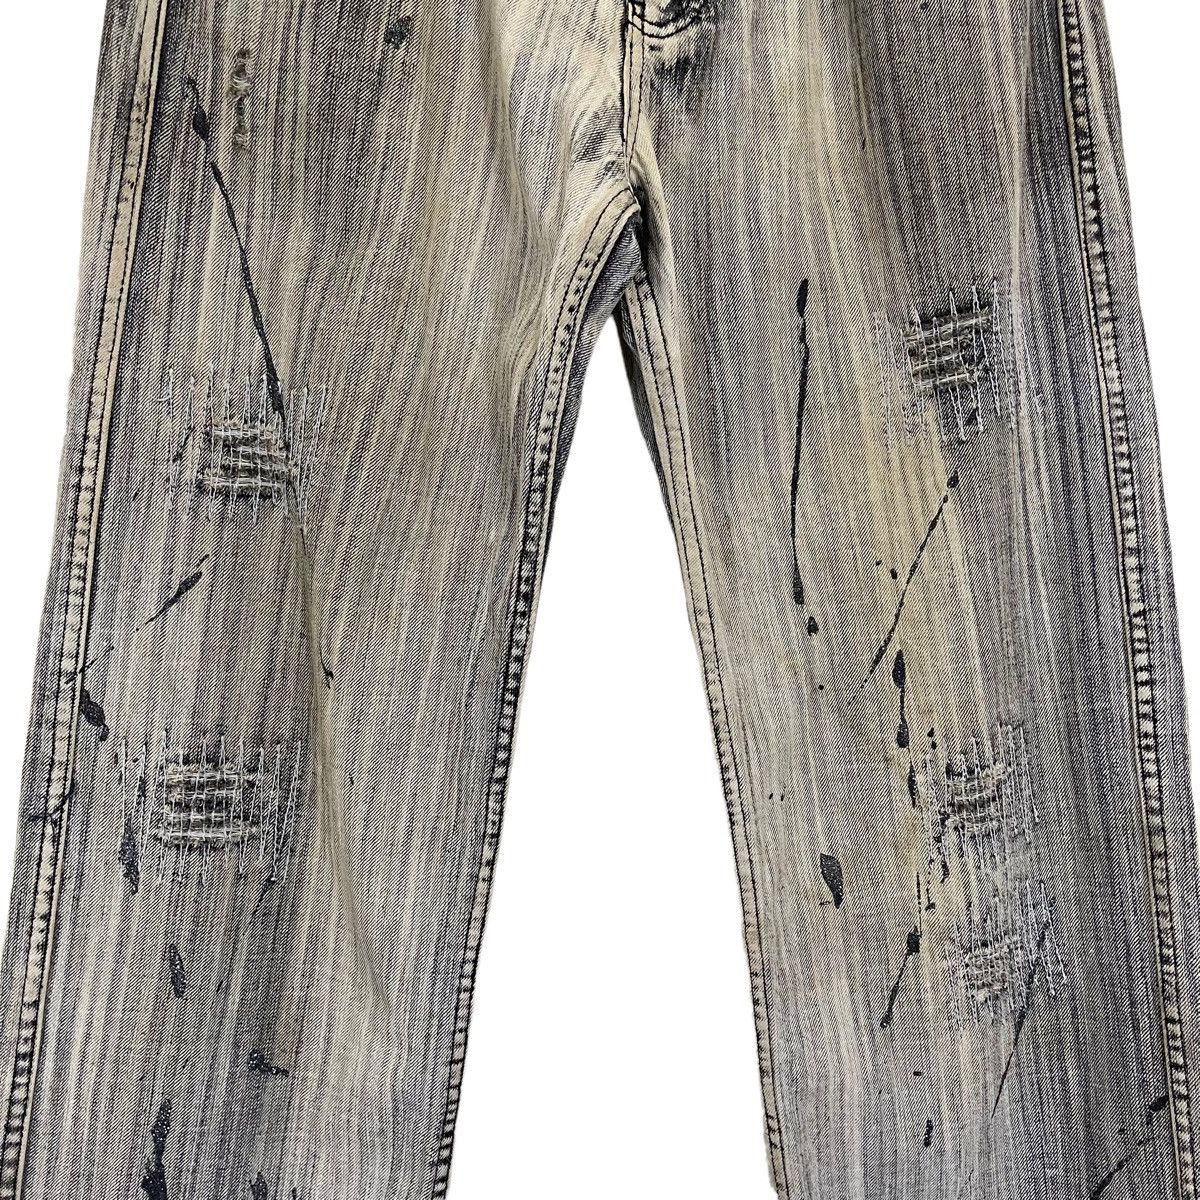 Japanase Unbrand Denim Flare Jeans 30 - 7